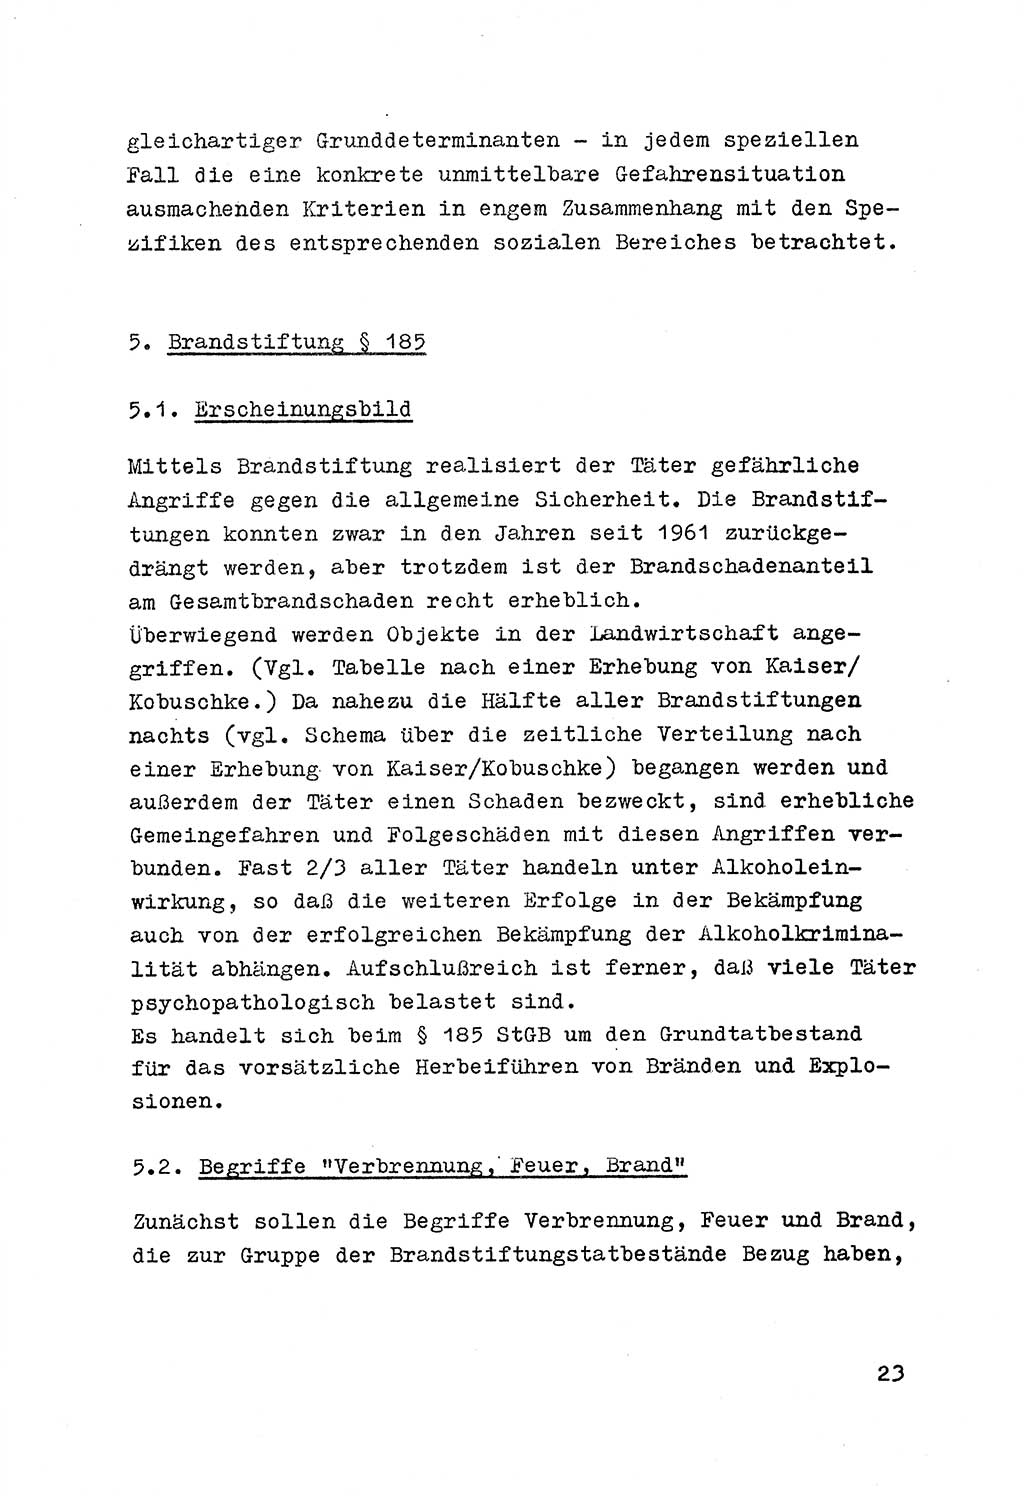 Strafrecht der DDR (Deutsche Demokratische Republik), Besonderer Teil, Lehrmaterial, Heft 7 1970, Seite 23 (Strafr. DDR BT Lehrmat. H. 7 1970, S. 23)